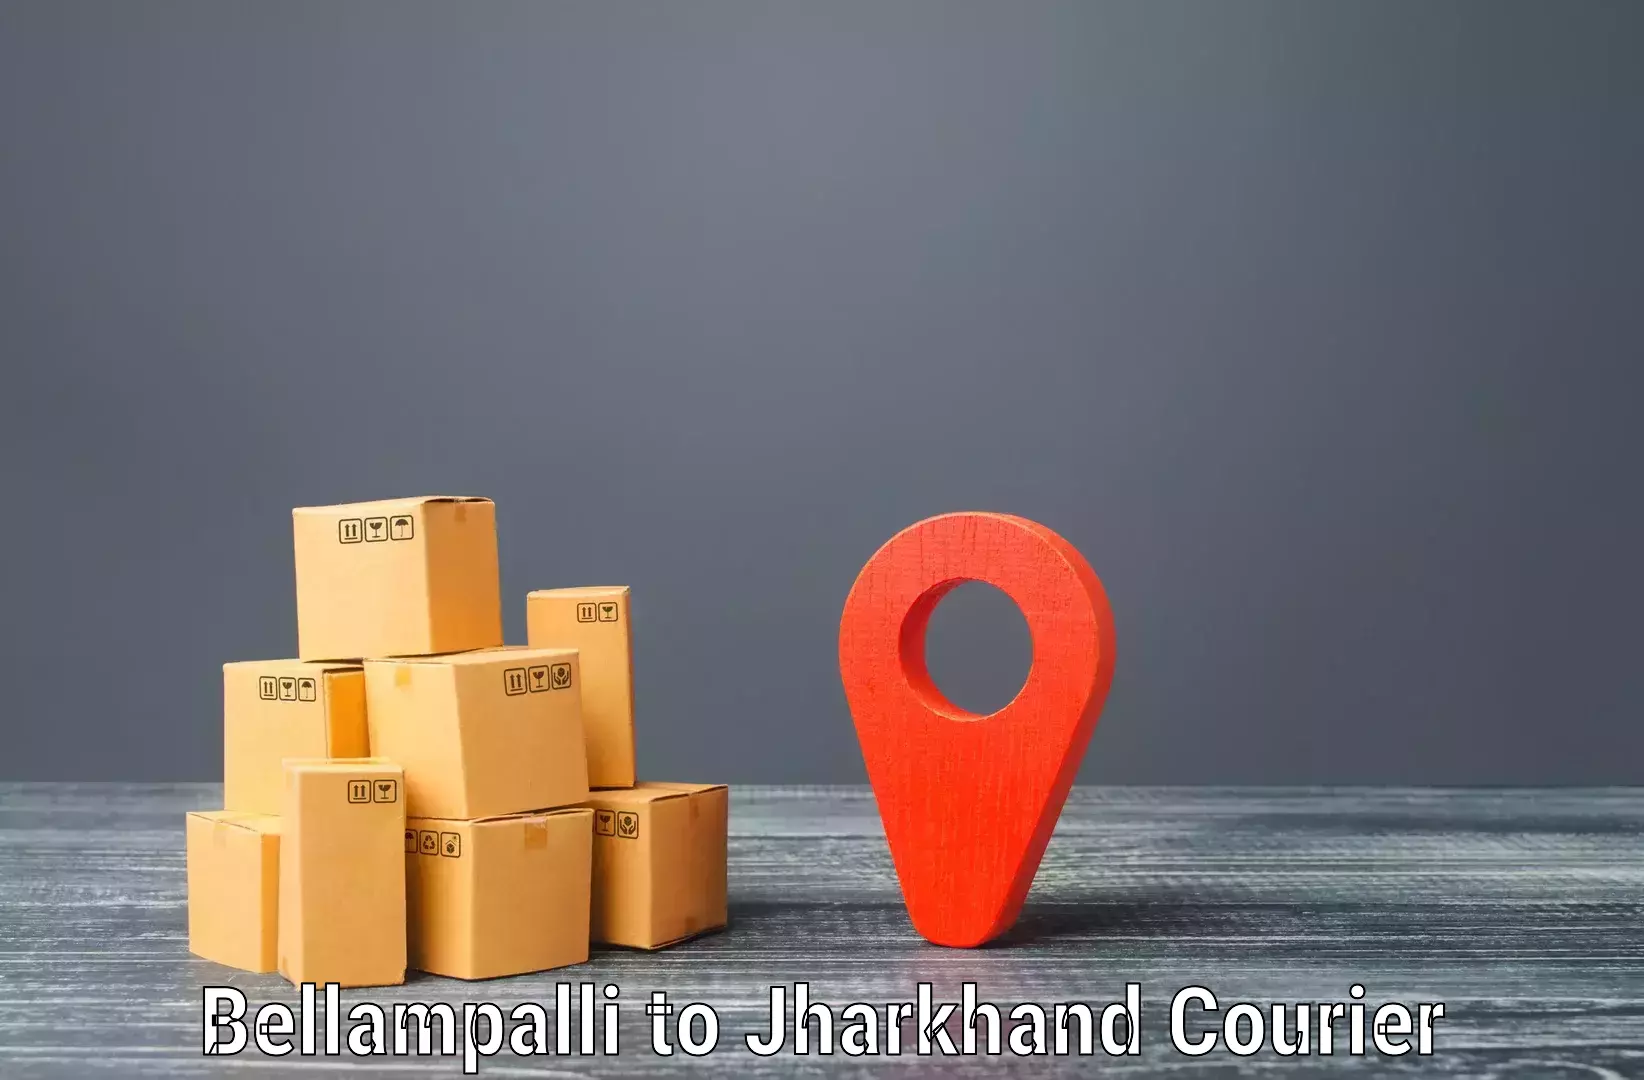 Smart courier technologies Bellampalli to Patan Palamu